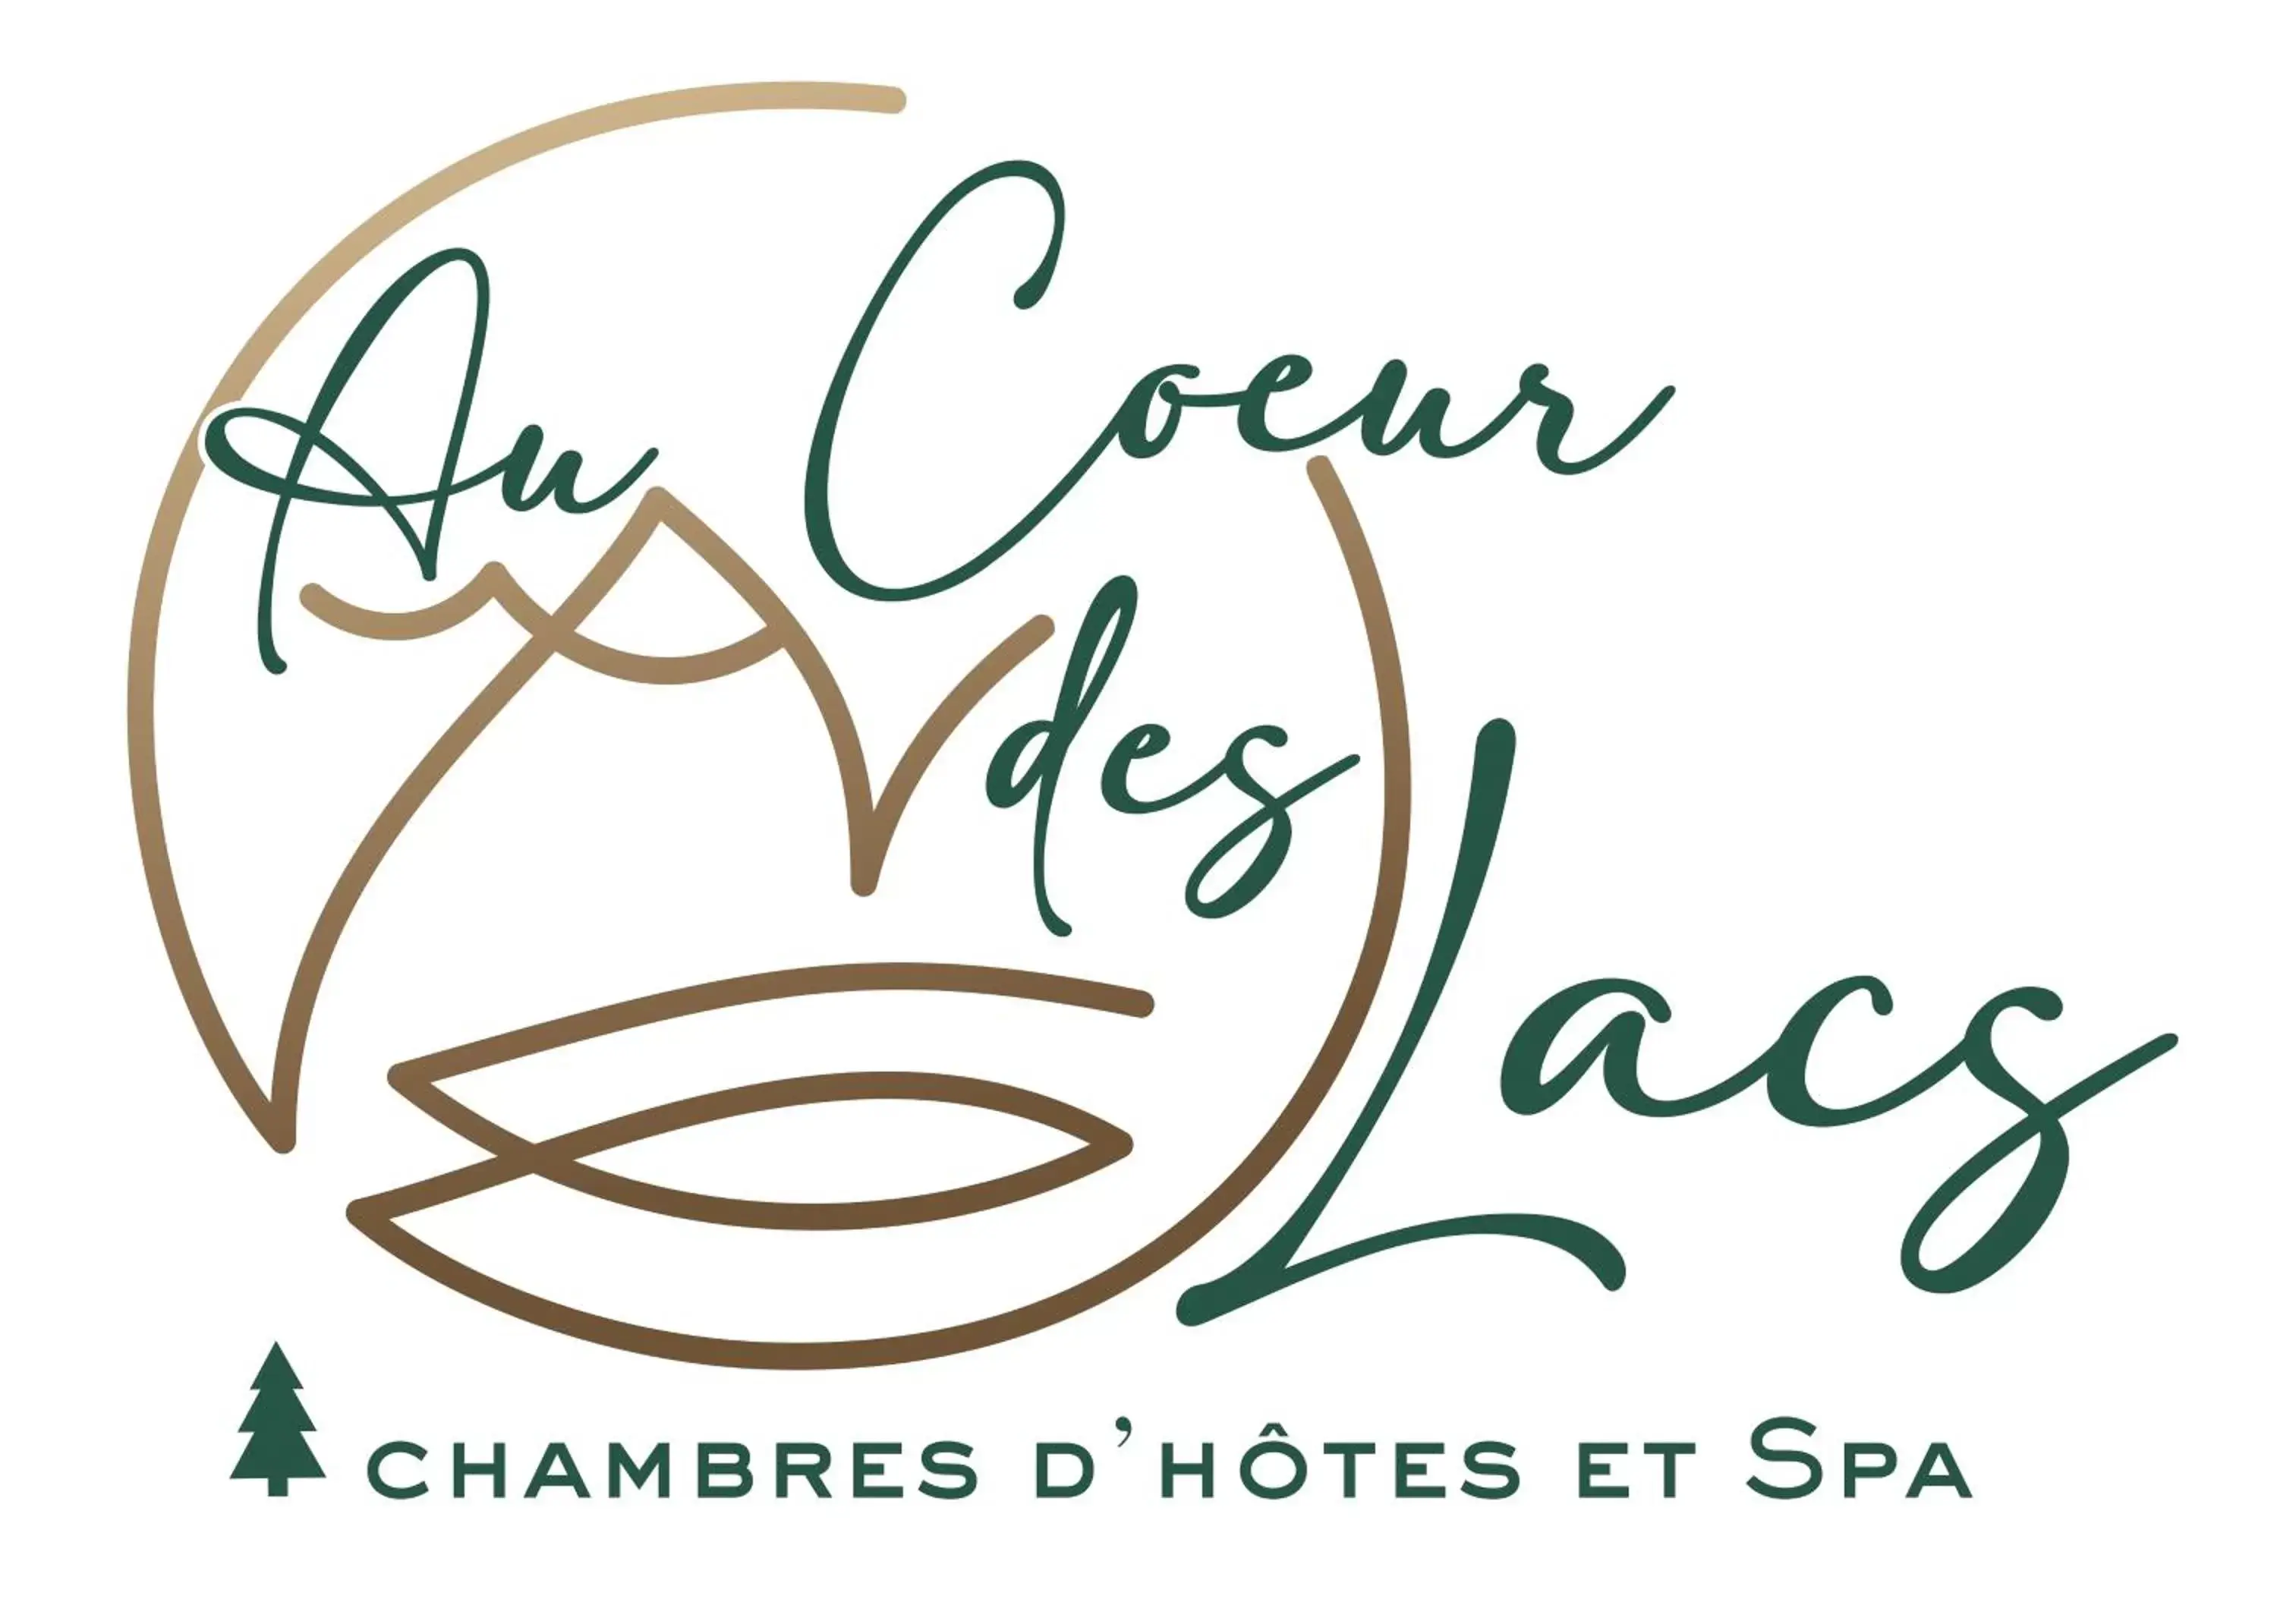 Property logo or sign in Au Cœur des Lacs - Chambres d'hôtes